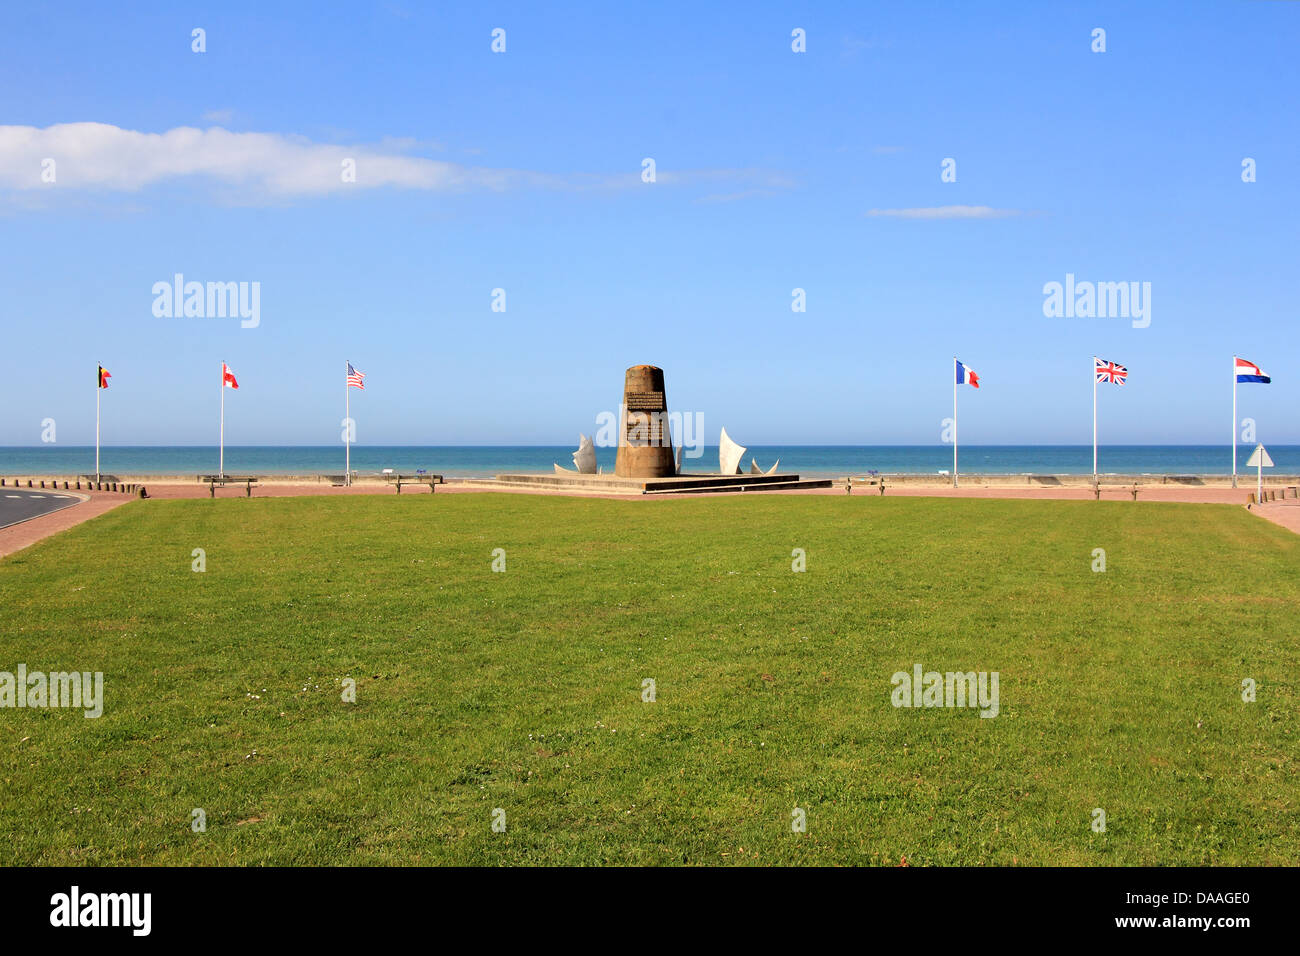 Monument à Omaha Beach - le lieu du débarquement des forces alliées au cours de l'invasion du Jour J en Normandie - 6 juin 1944. Banque D'Images